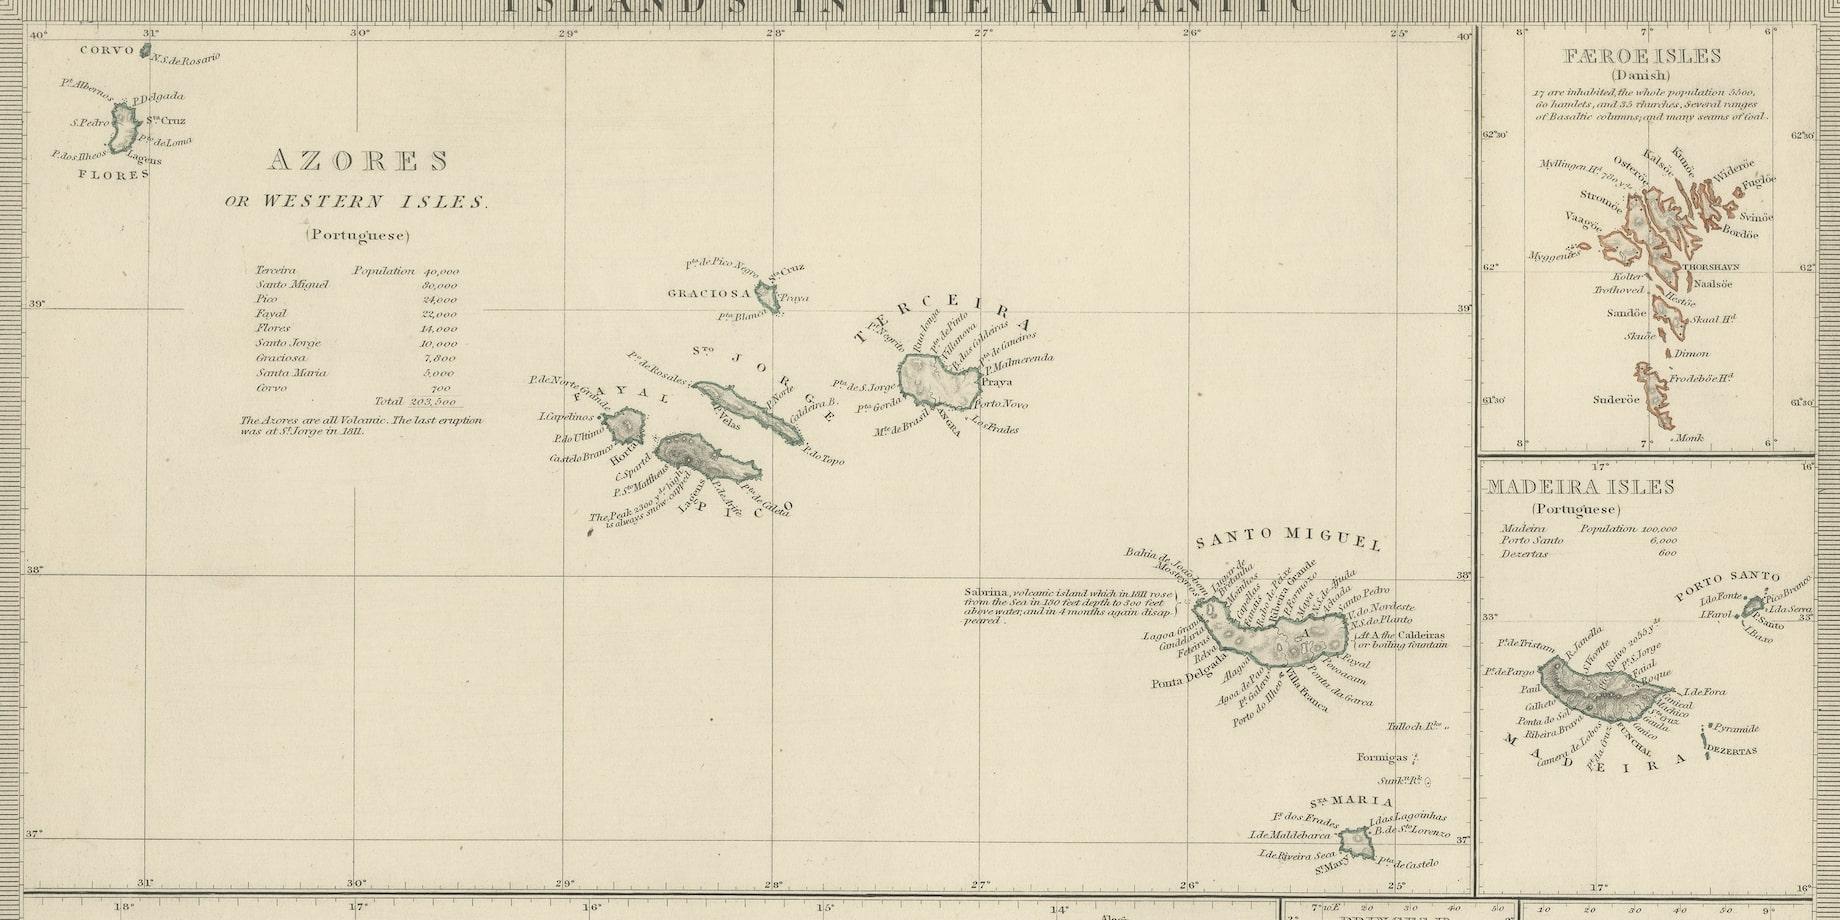 maps of islands in the atlantic ocean